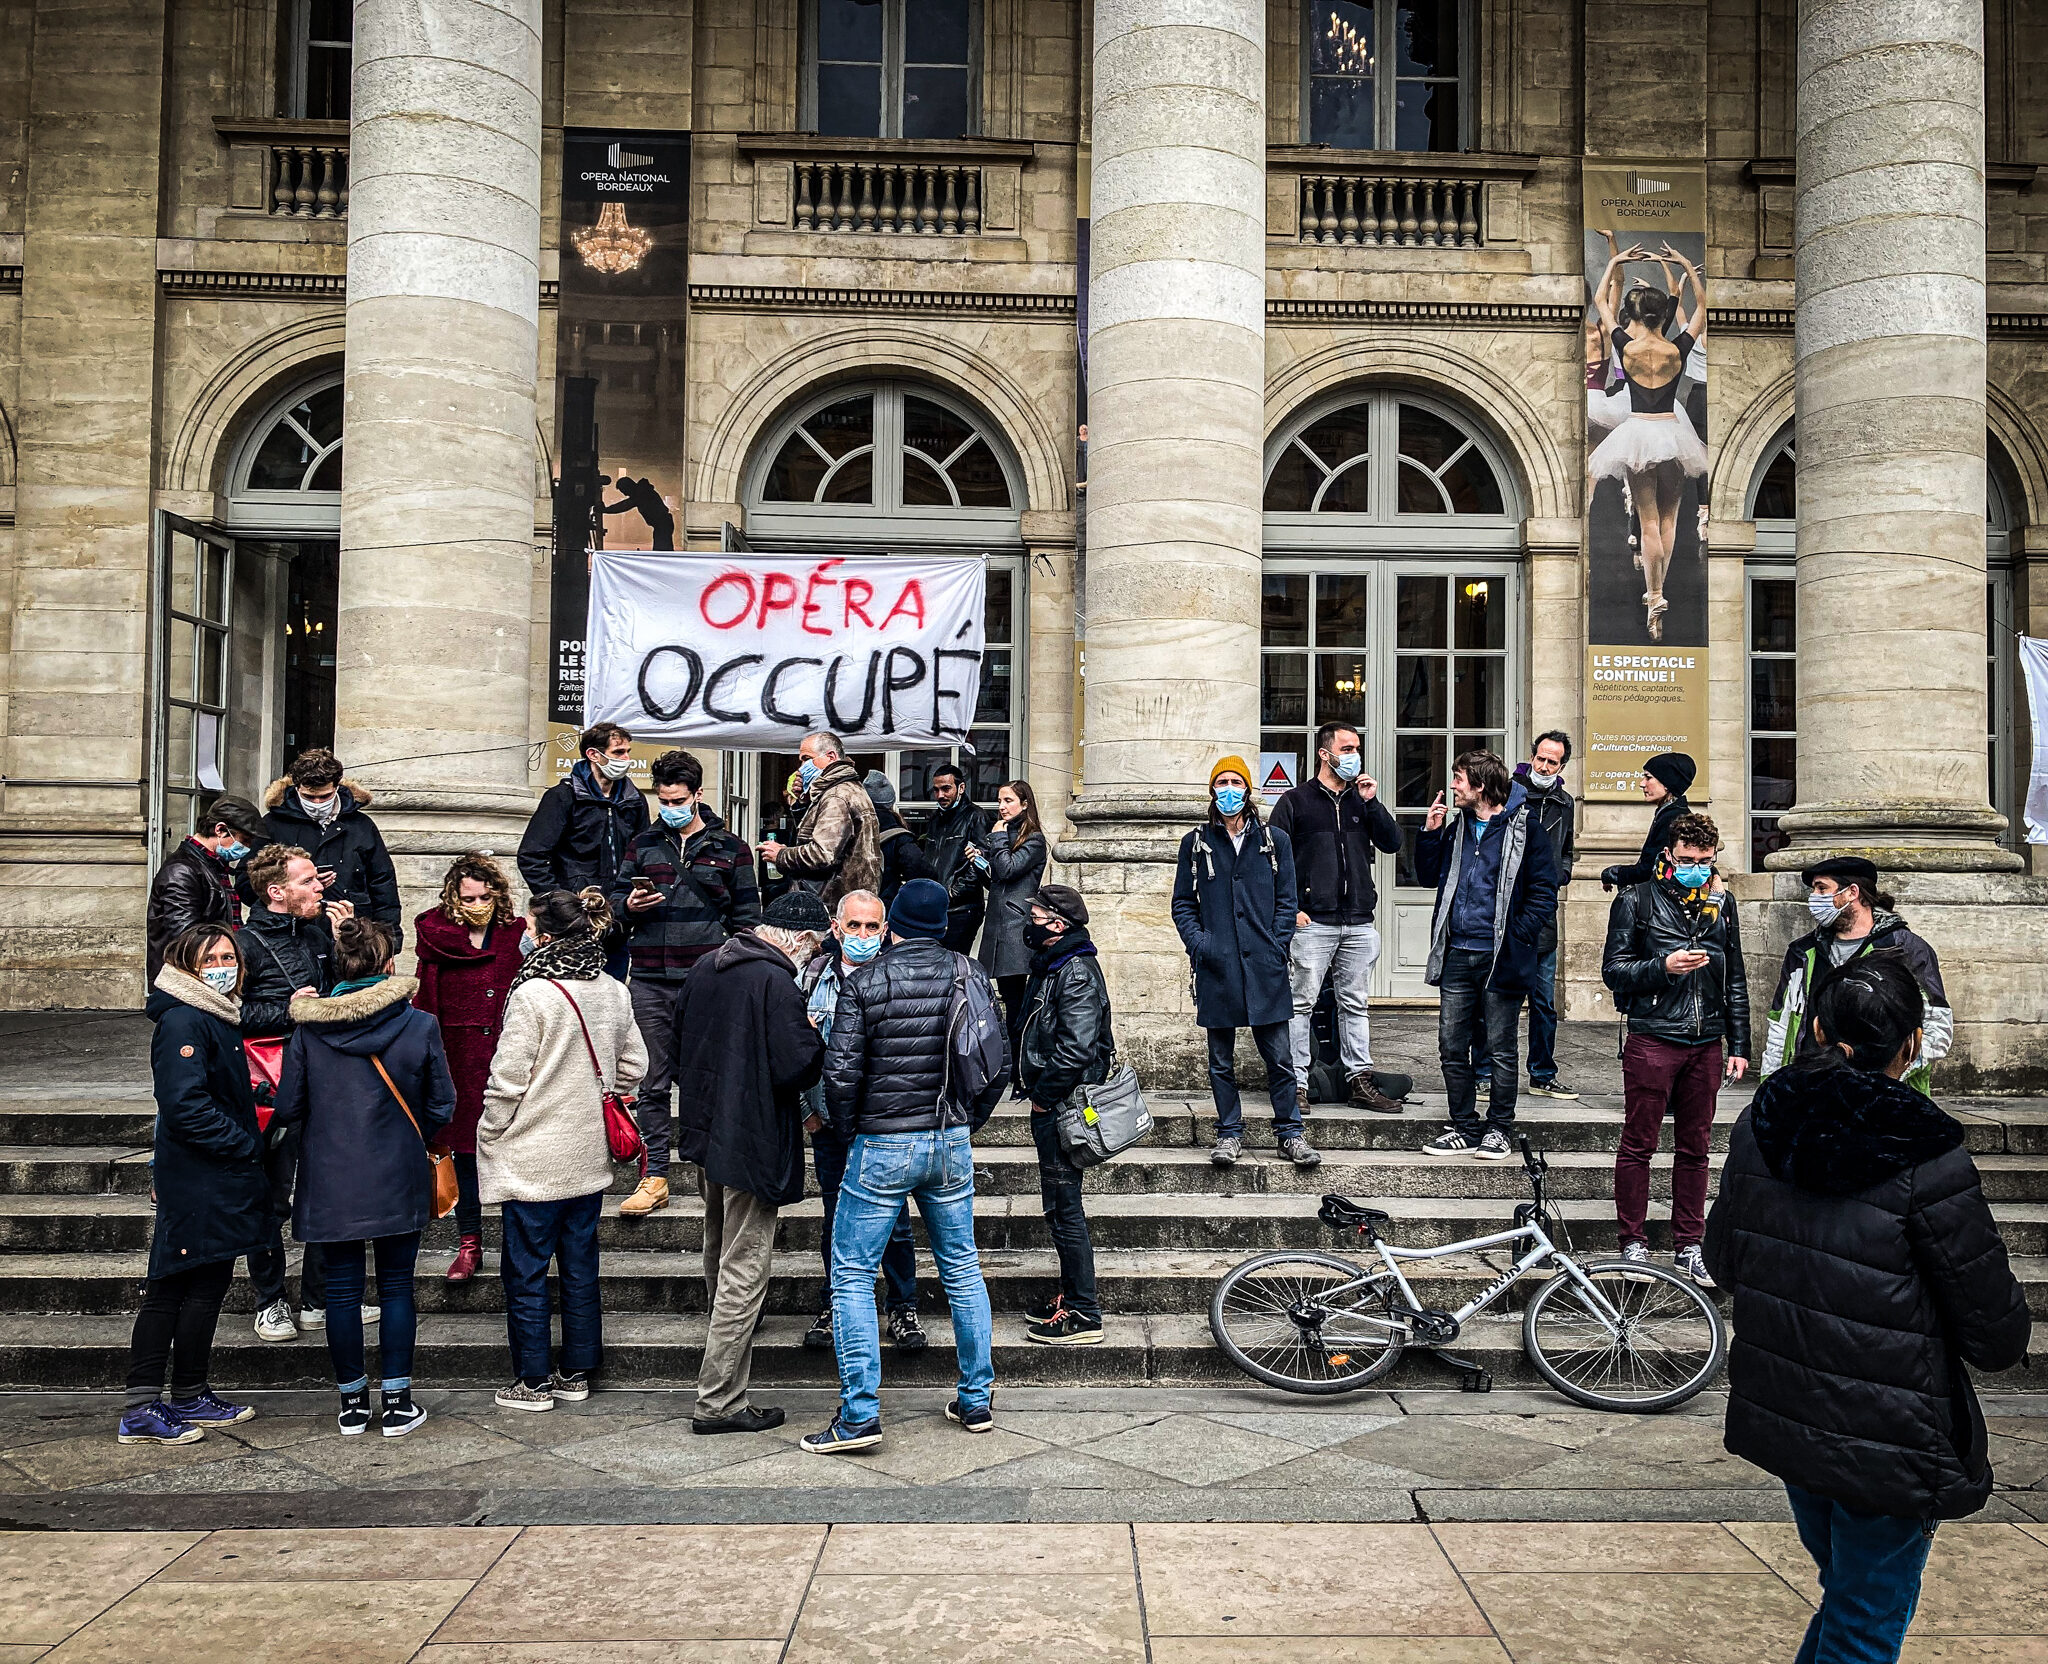 L’Opéra de Bordeaux occupé, la « culture des luttes » en scène